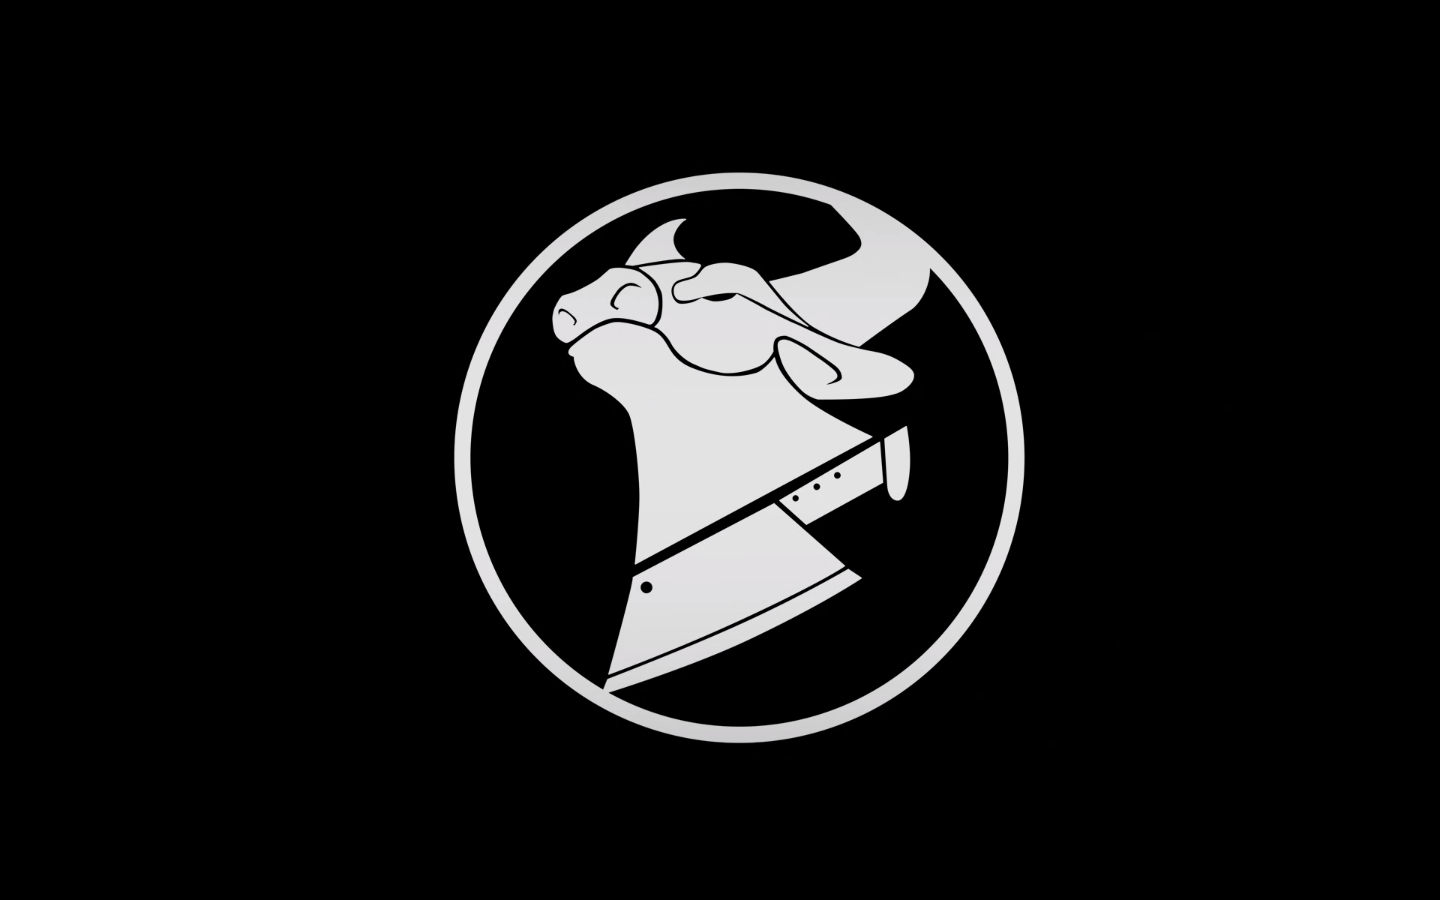 Spinny Logo - Transparent Spinny Logo - GFX Requests & Tutorials - GTAForums